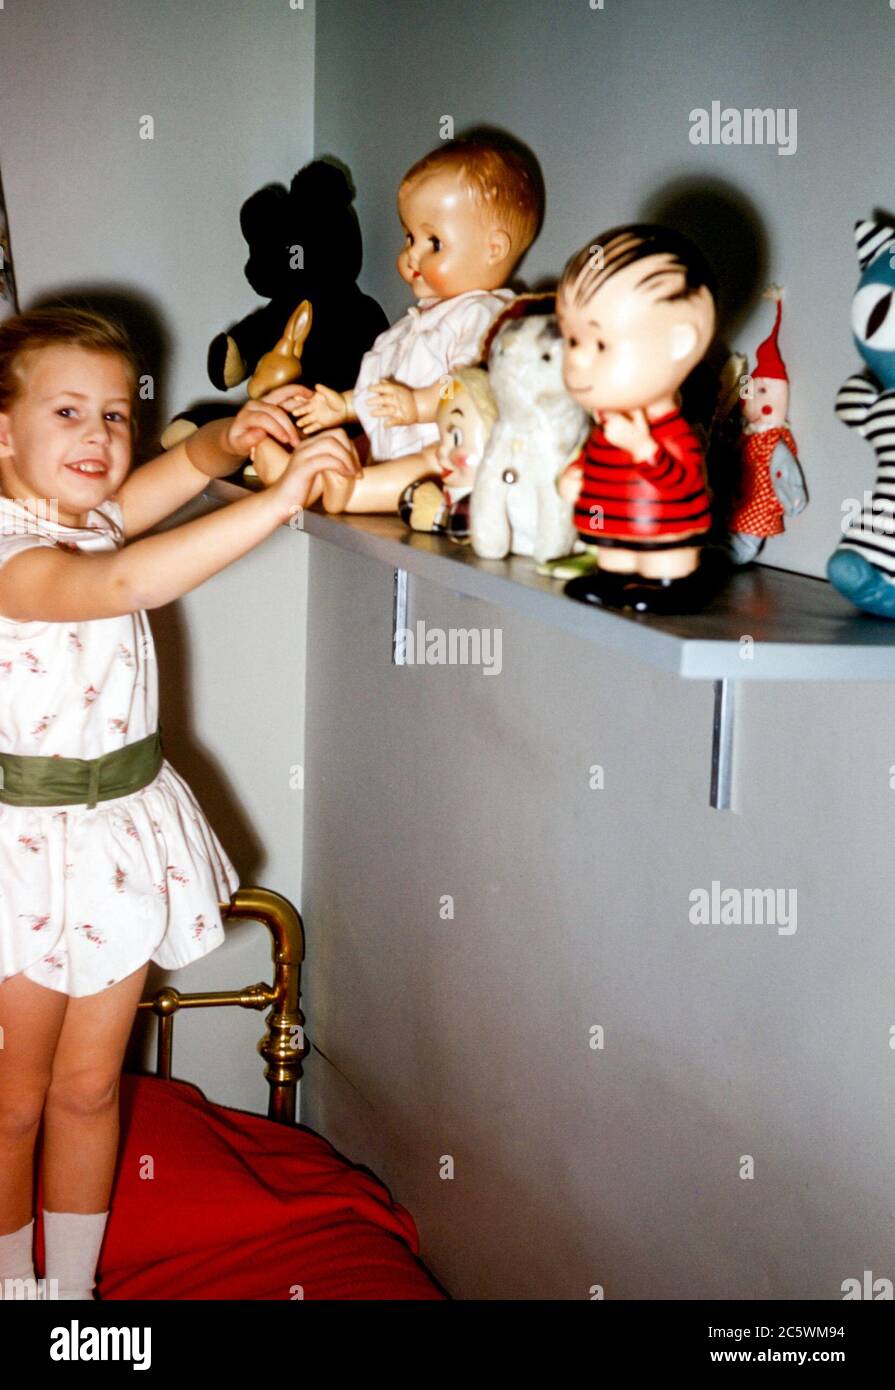 Jeune fille de 4 ans dans la chambre de l'enfant avec du laiton Lit montrant sa collection de poupées-jouets, y compris le personnage de Linus De Peanuts dessin animé aux Etats-Unis dans les années 1960 Banque D'Images